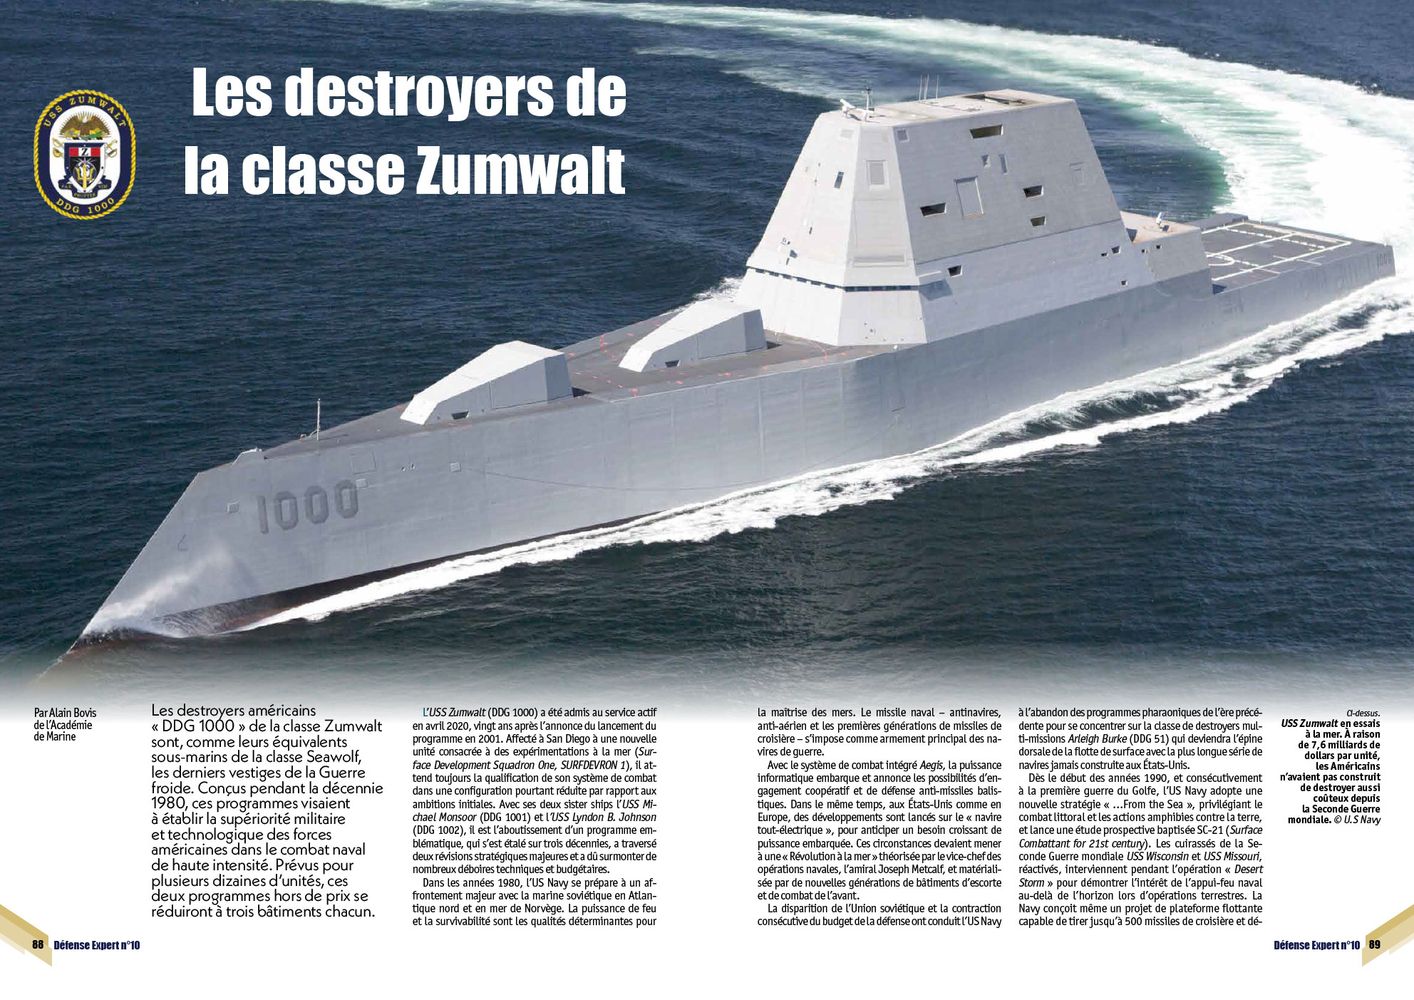 Les destroyers de la classe Zumwalt - page 88 & 89 DE n°10